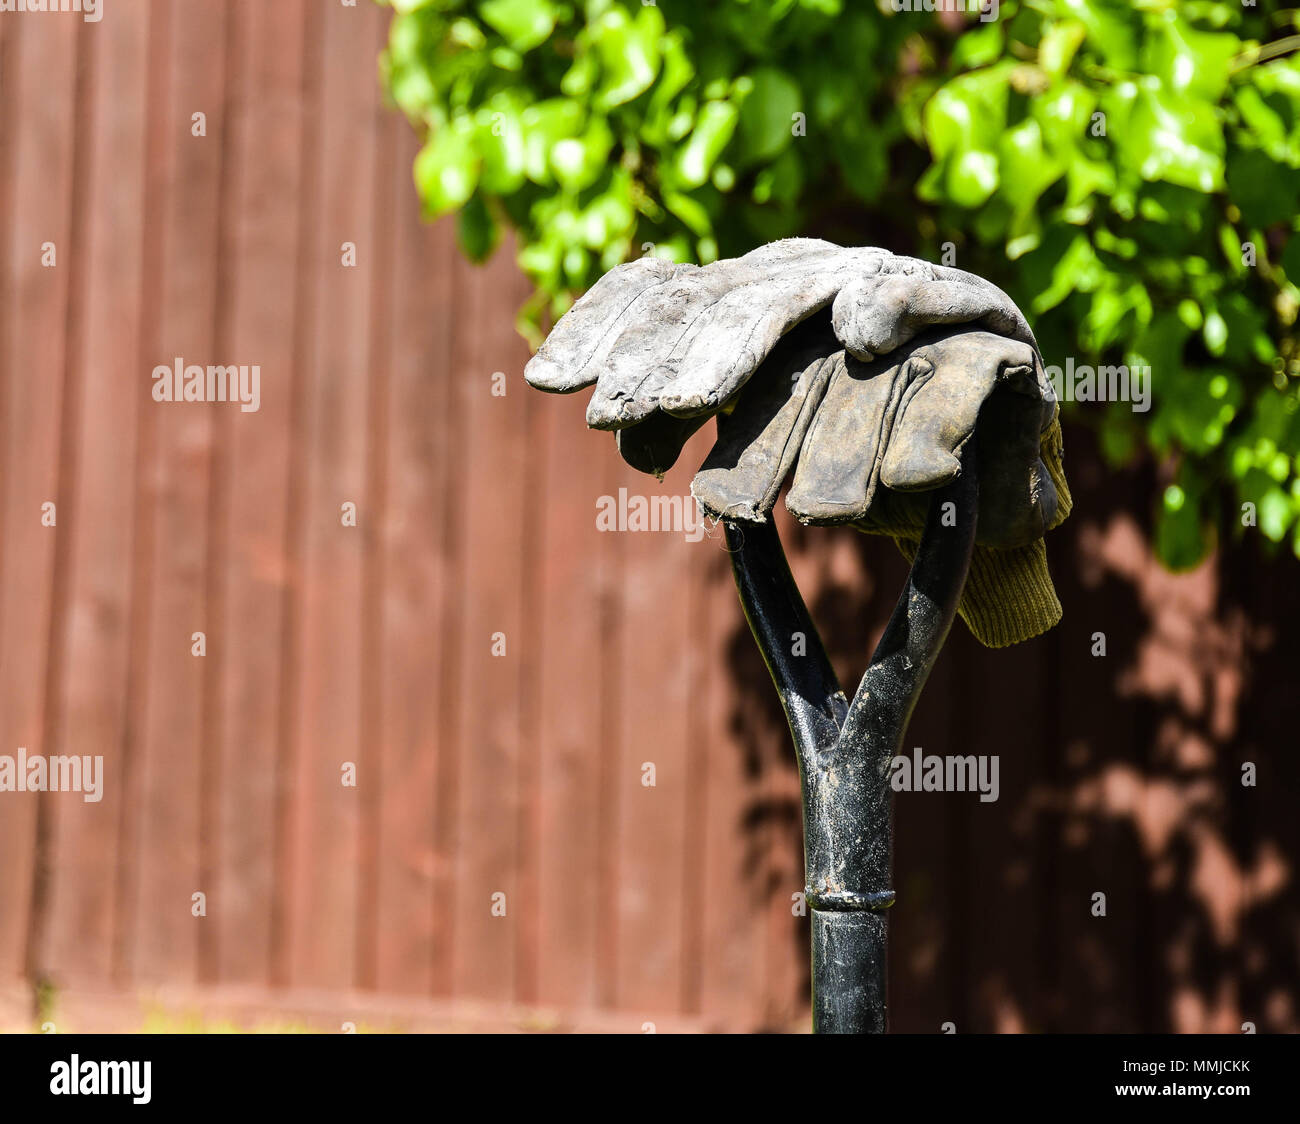 Gartenhandschuhe auf einem Griff Stockfoto